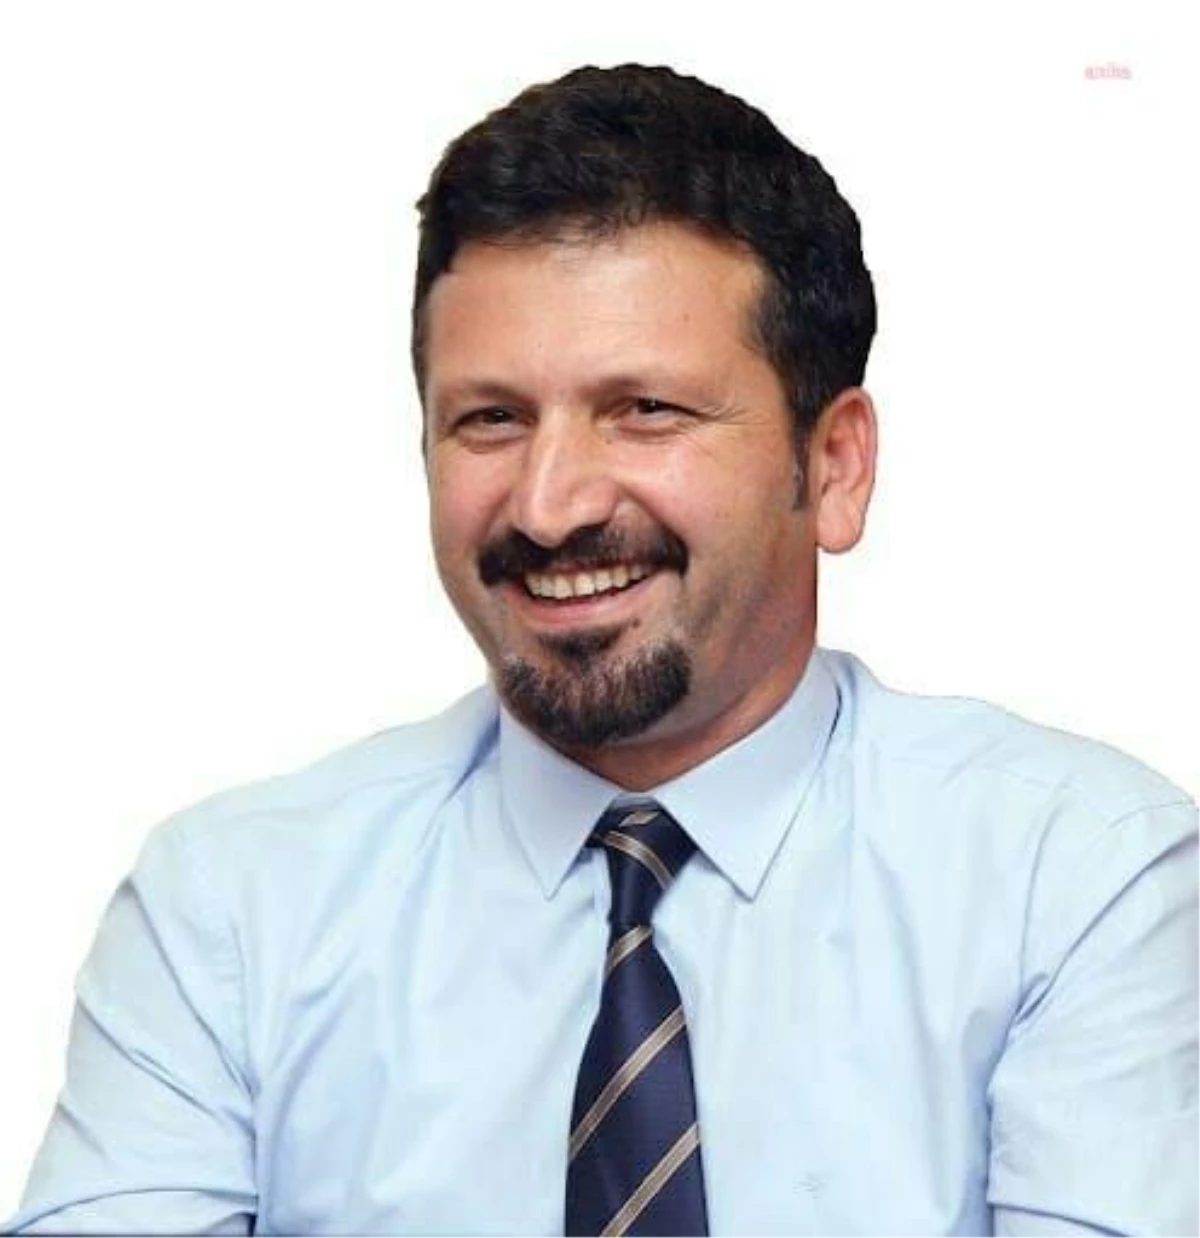 Tvhb Lideri Prof. Dr. Arslan'dan Veterinerlere '29 Nisan Dünya Veteriner Tabipler Günü'nde Ankara'da Buluşma Daveti